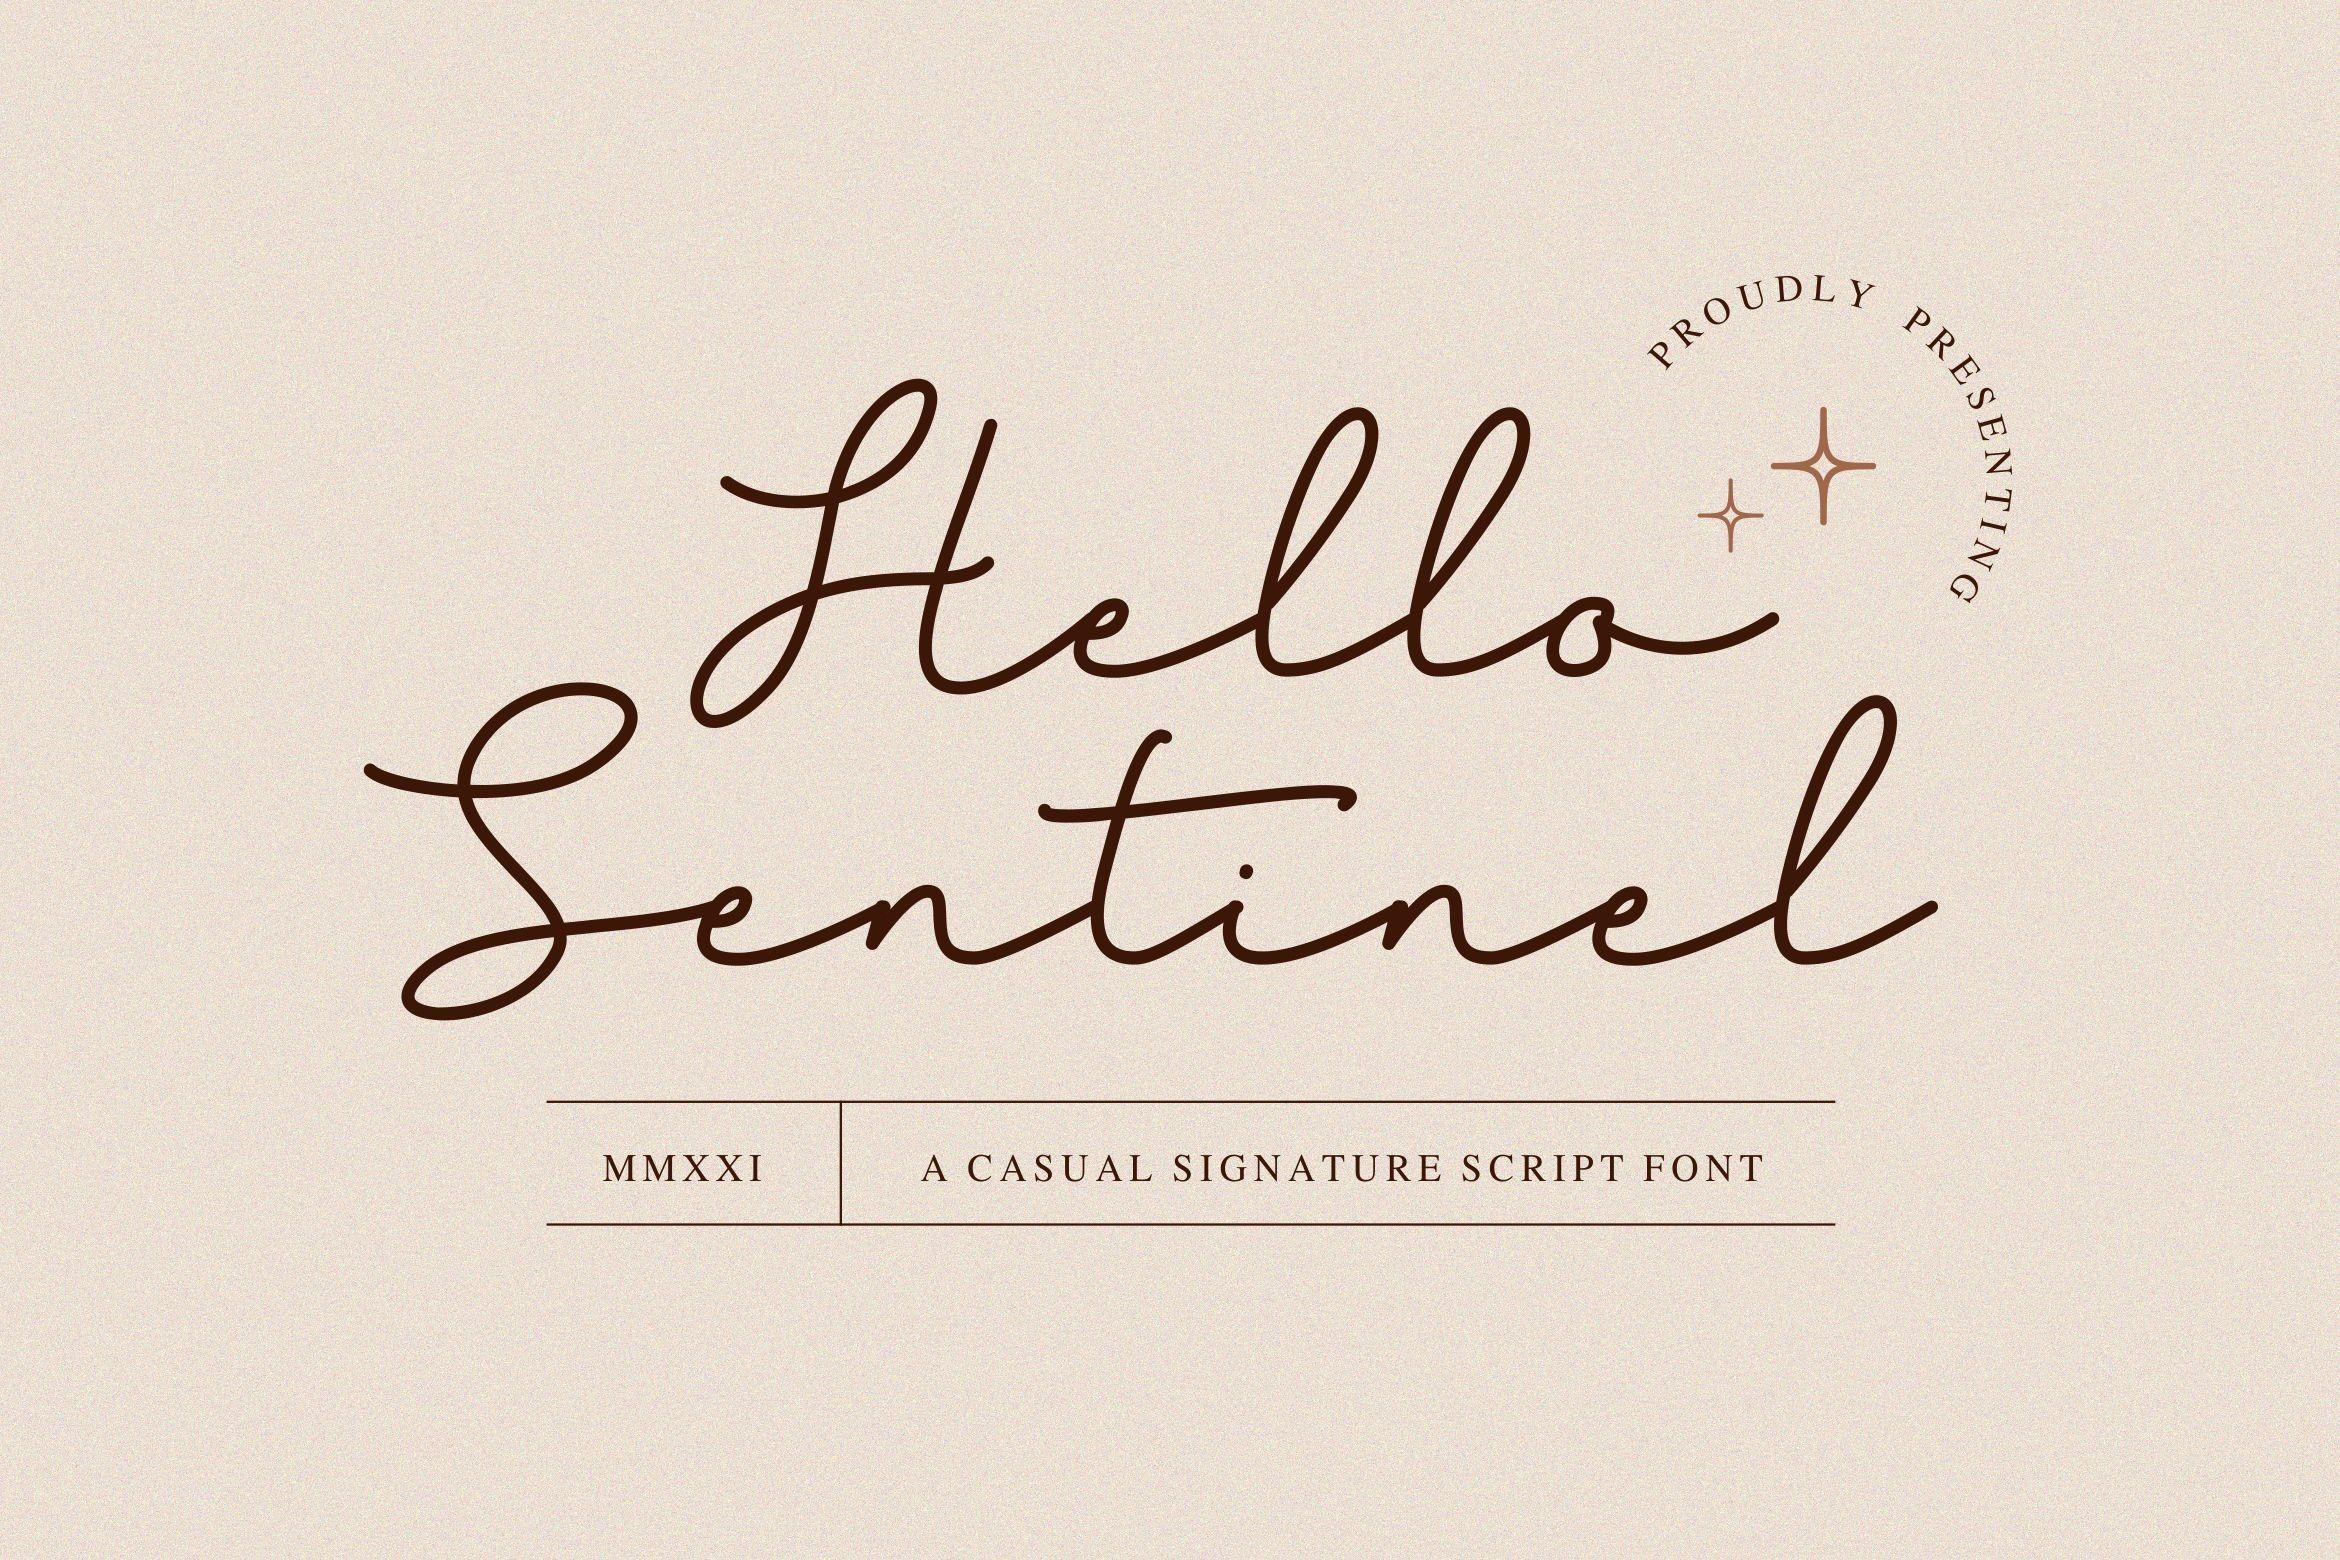 Sentinel Font